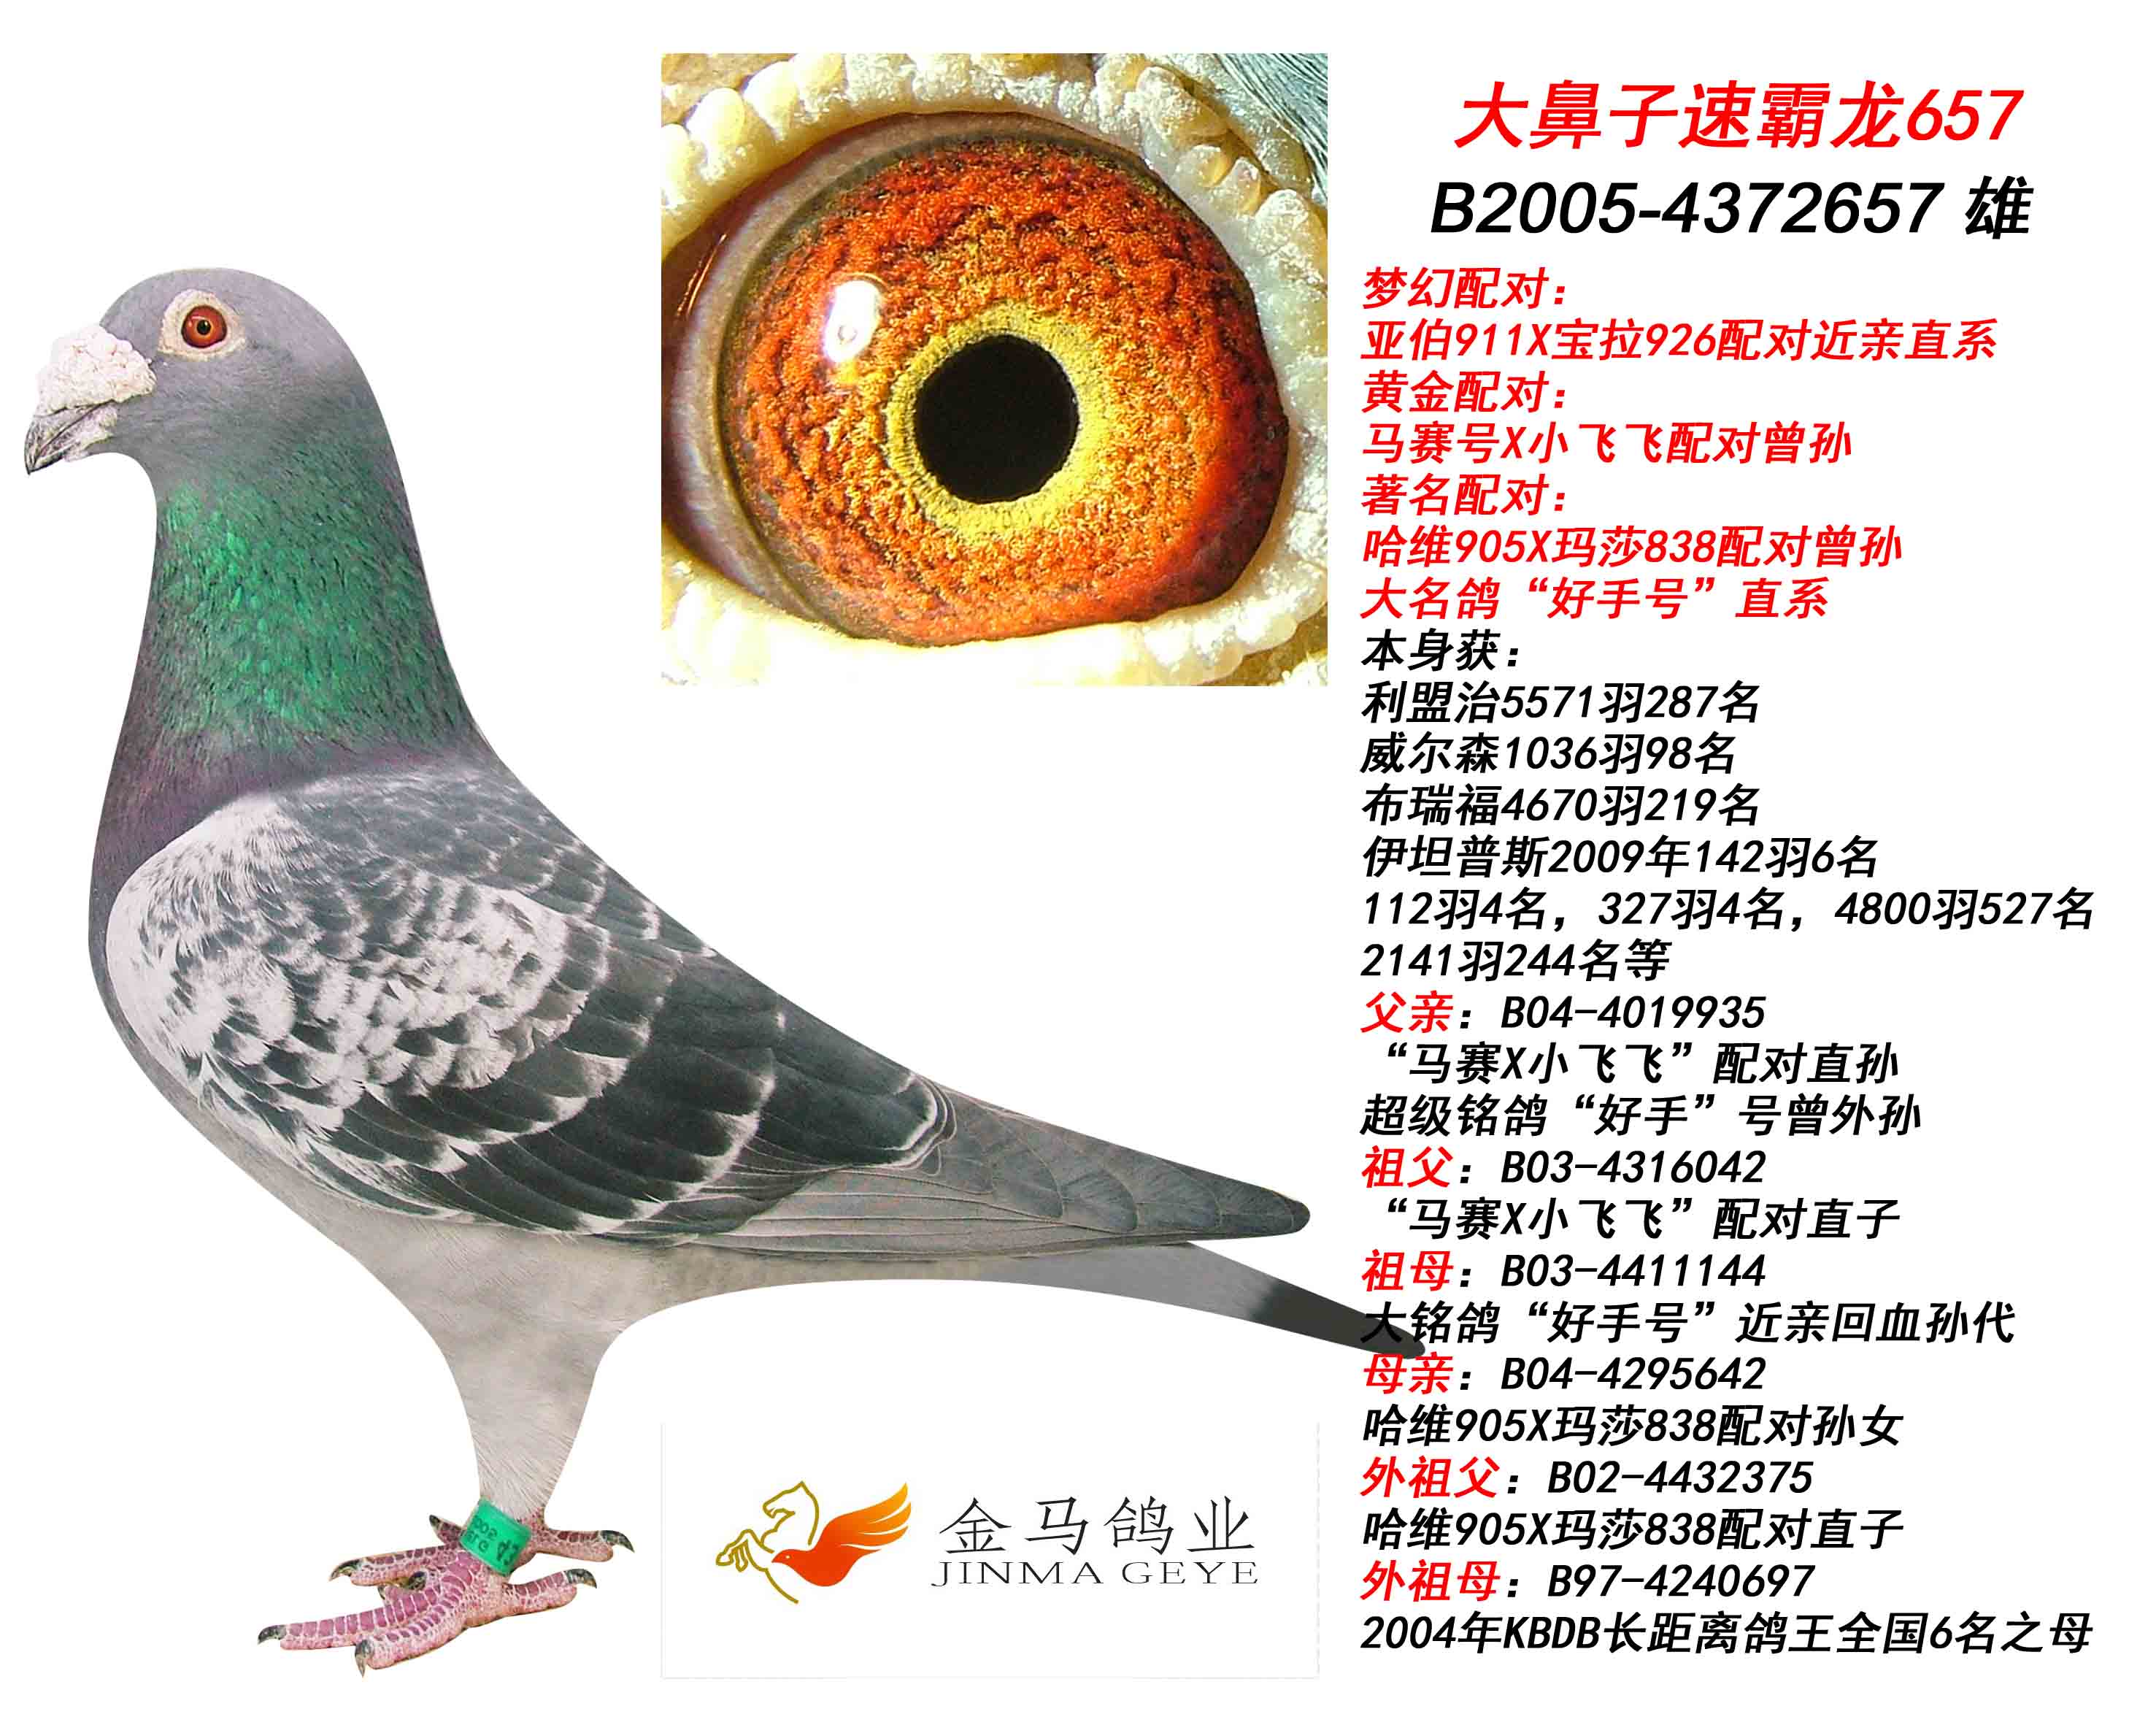 北京金马国际鸽业图片